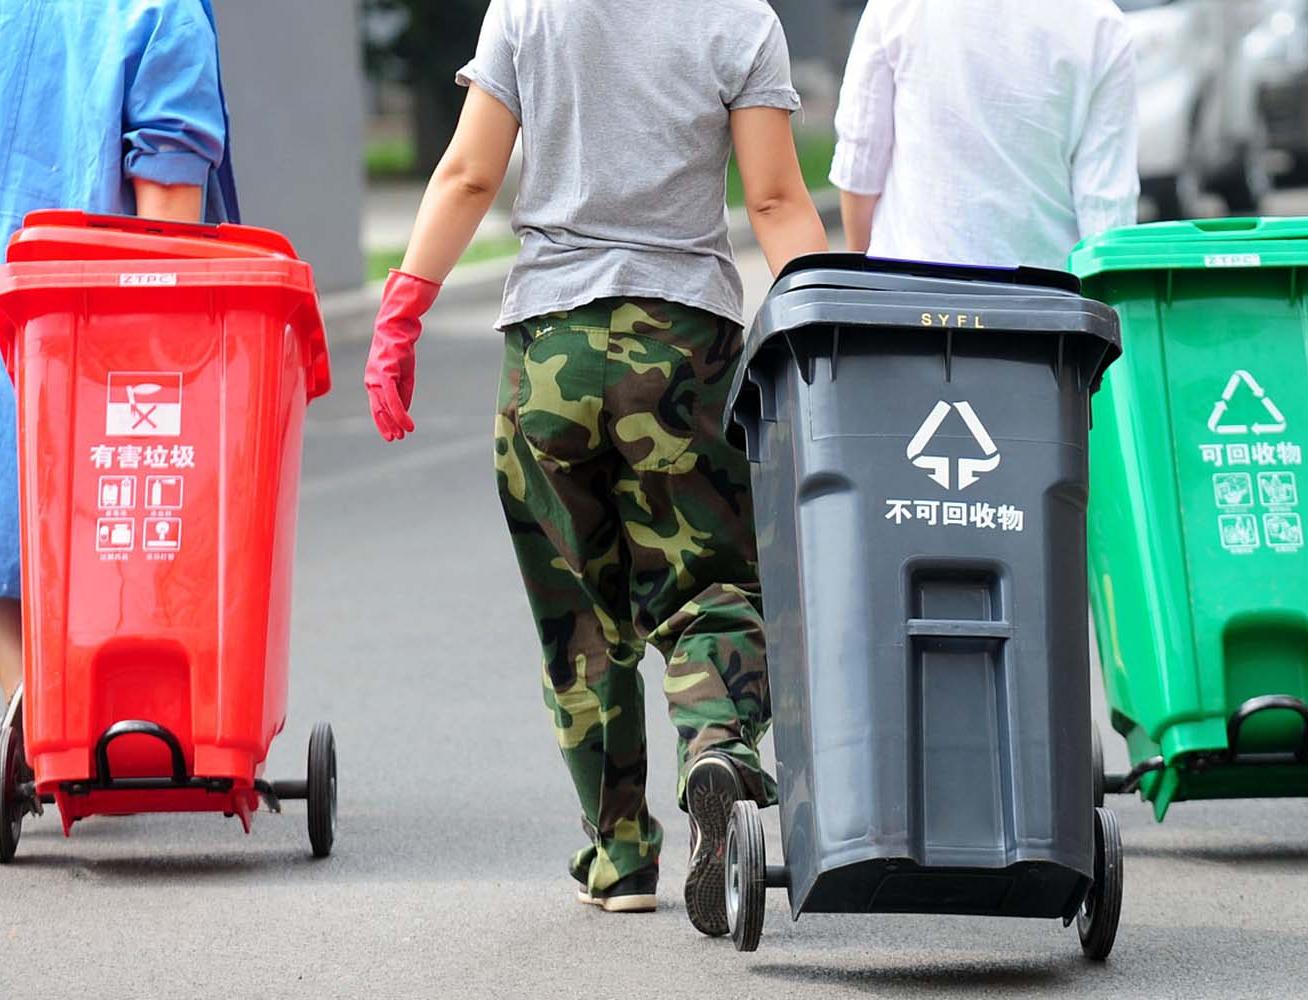 В Пекине начал действовать закон об обязательной сортировке мусора